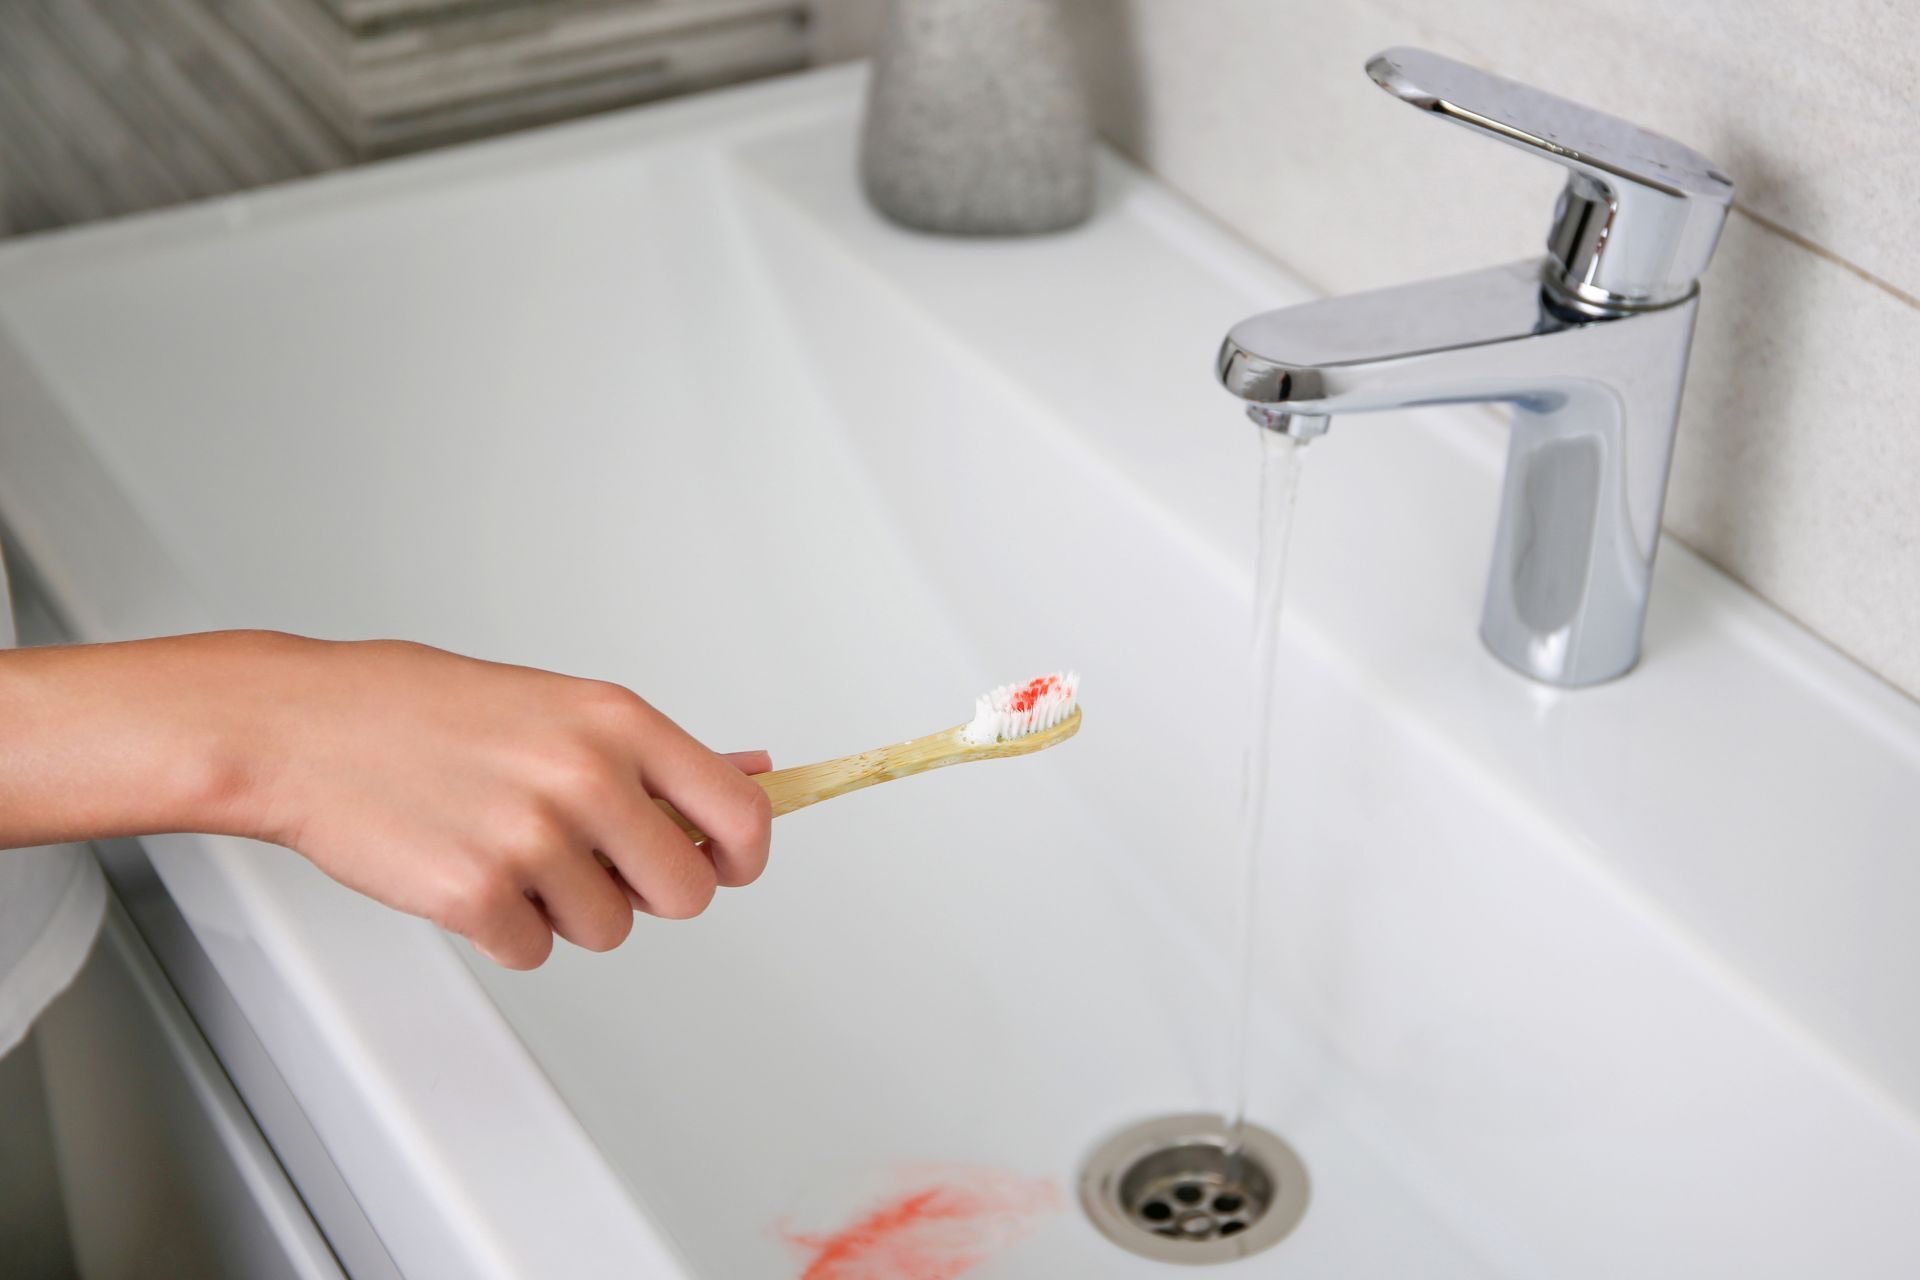 Blut auf der Zahnbürste auf dem Hintergrund des Waschbeckens.